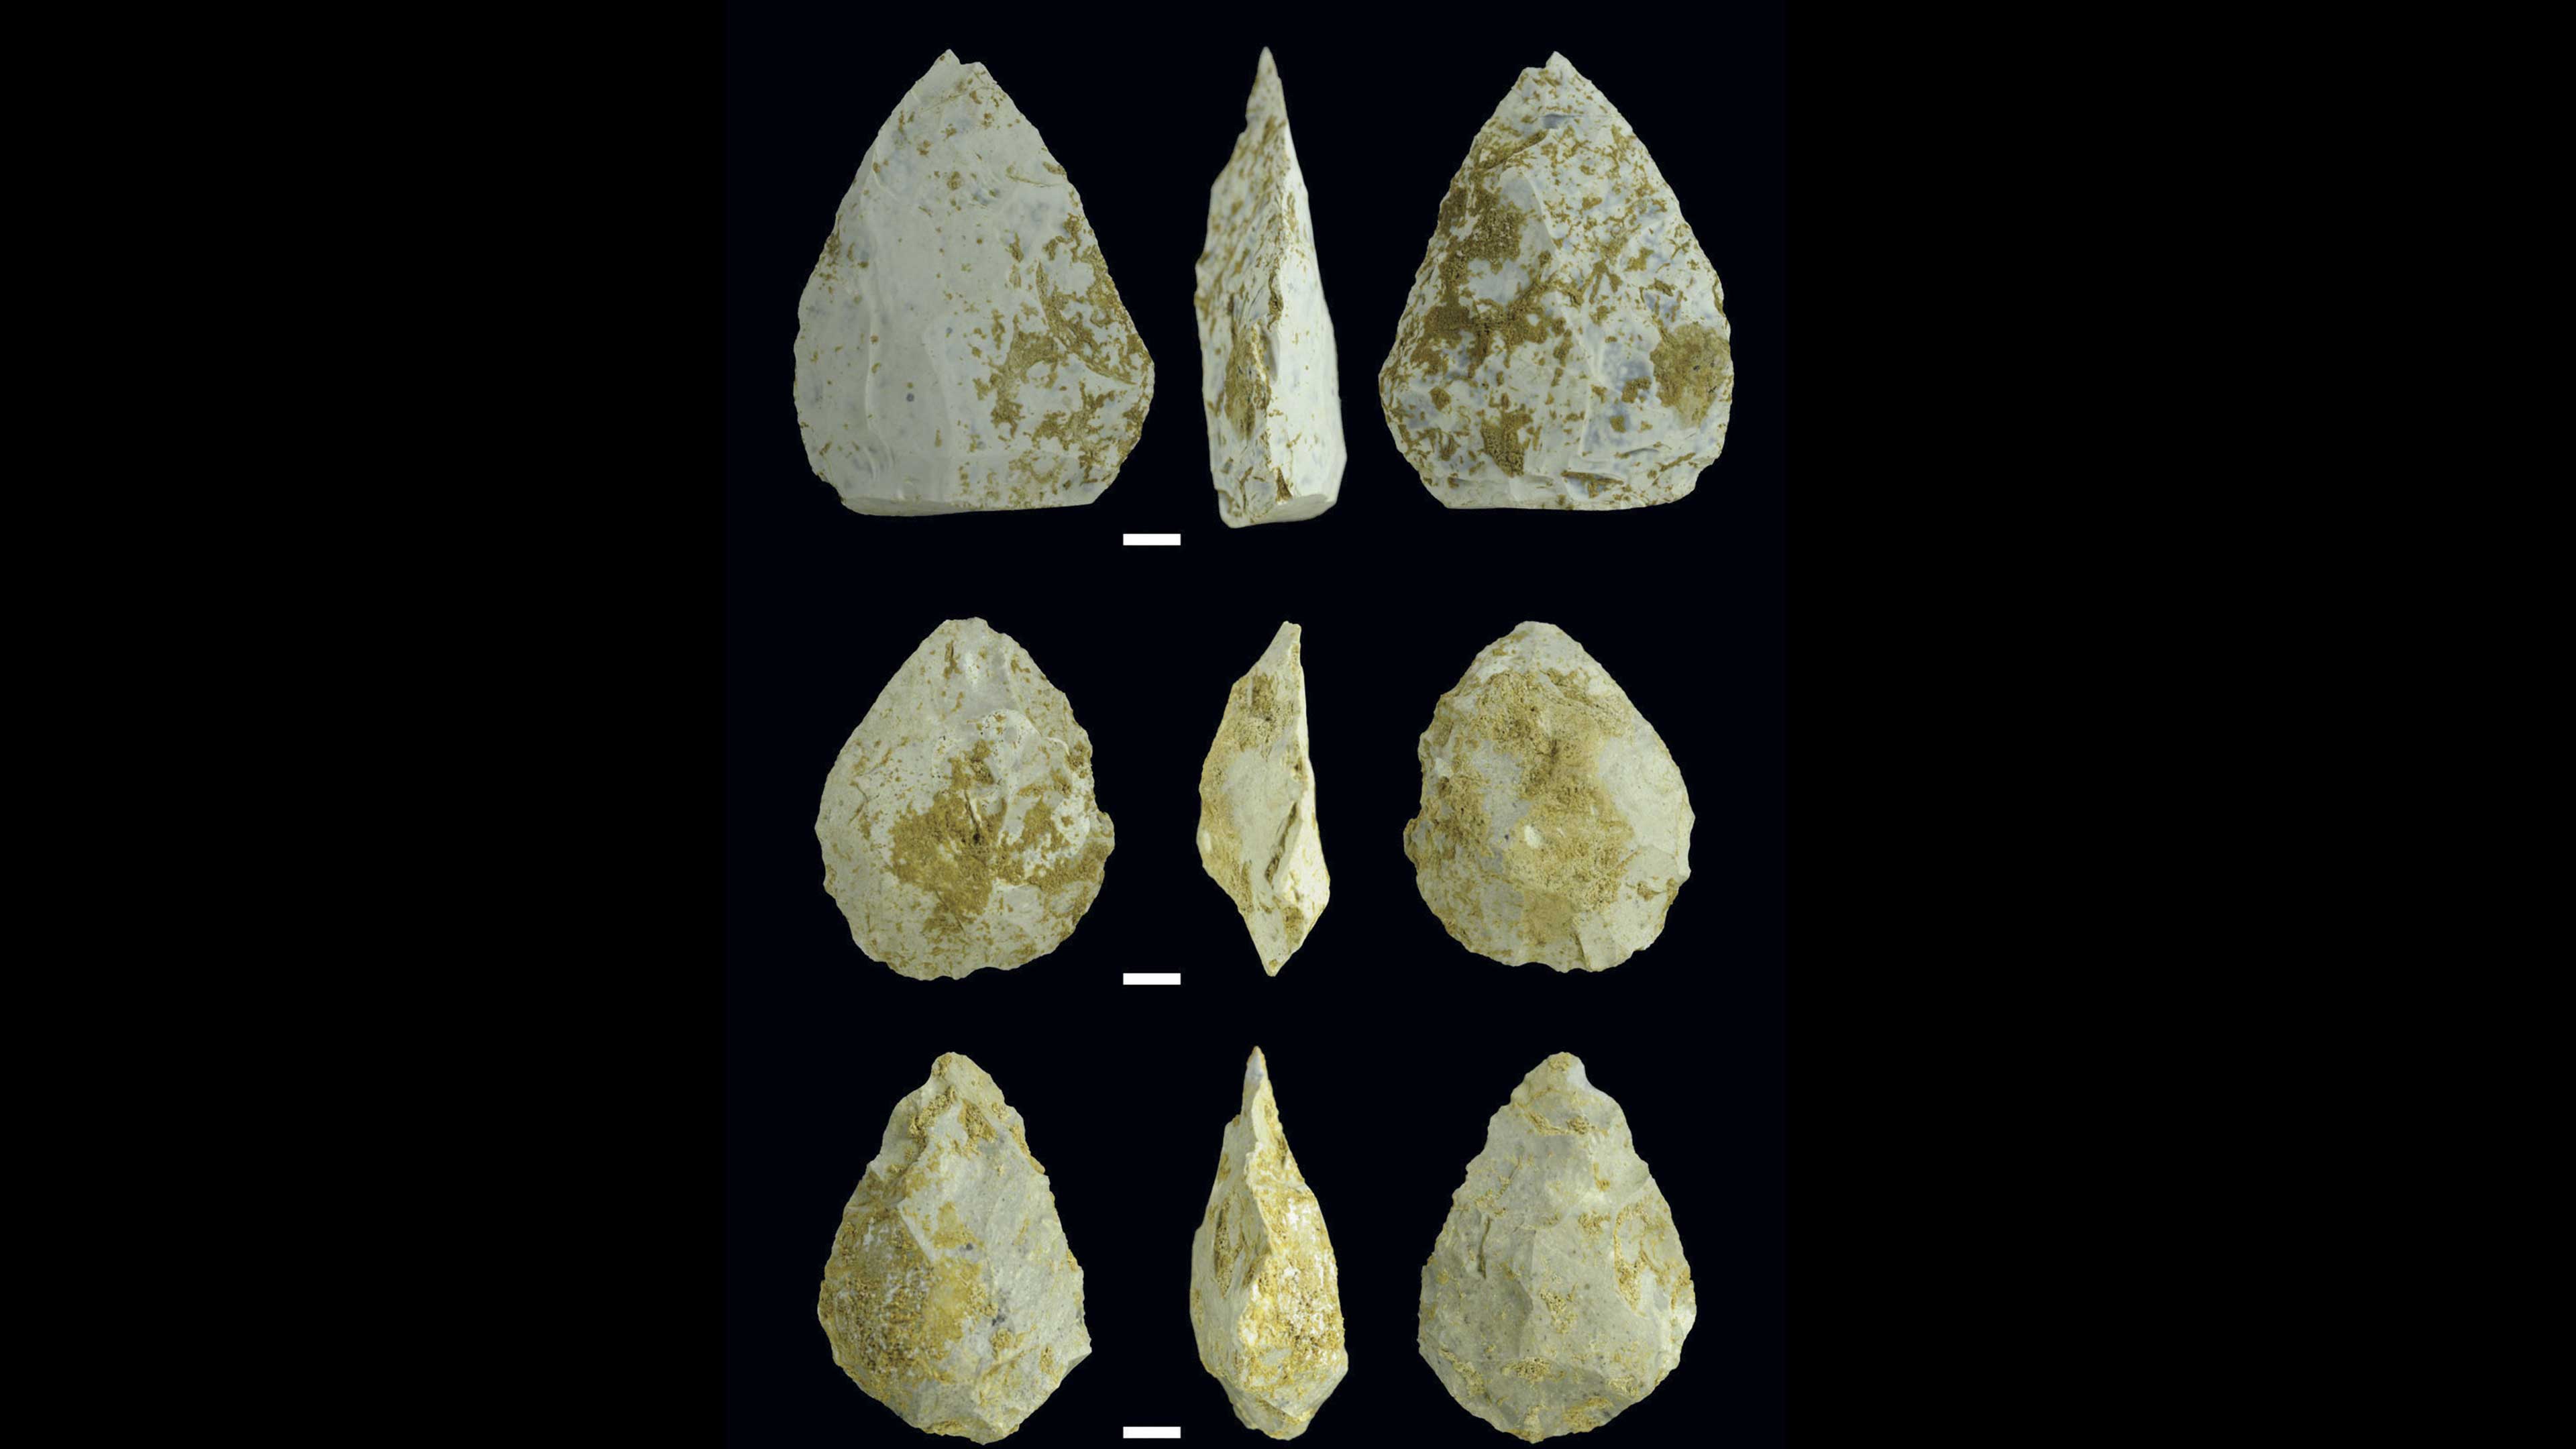 Herramientas neandertales: nuevos hallazgos